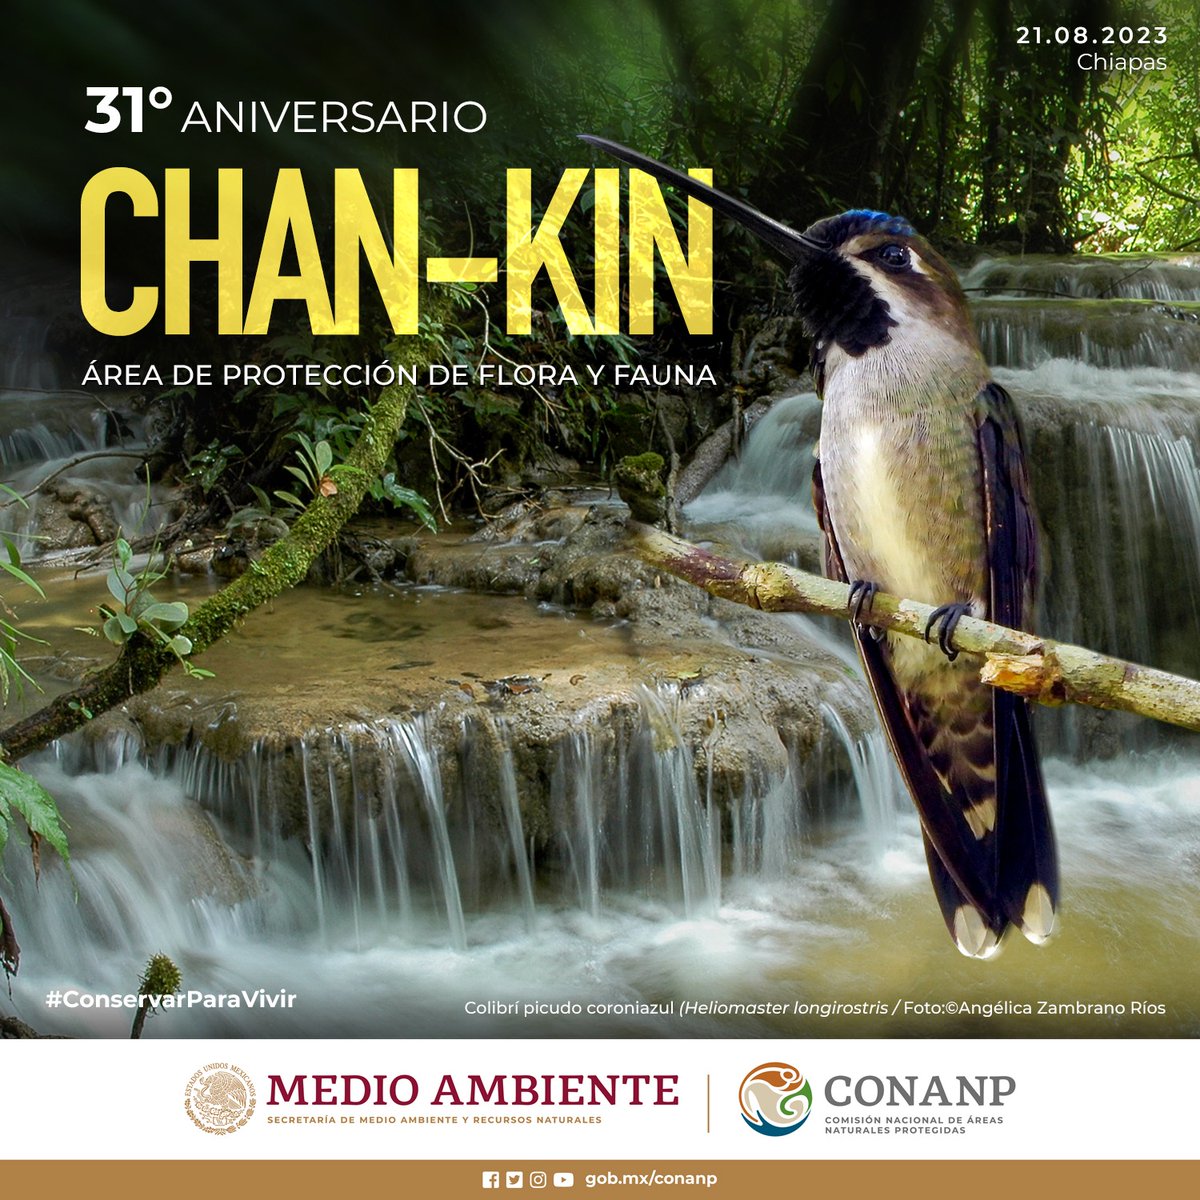 #FelizLunes Arrancamos la semana celebrando los 31 años del decreto del Área de Protección de Flora y Fauna #ChanKin, en Chiapas. 🌿 #ÁreaNaturalProtegida con una diversidad de ecosistemas tropicales y parte de la #SelvaLacandona. #ConservarParaVivir 🌲🌊🌳🕷️🐊🐒🦎🪱🐆🦜🦇🌿🐾